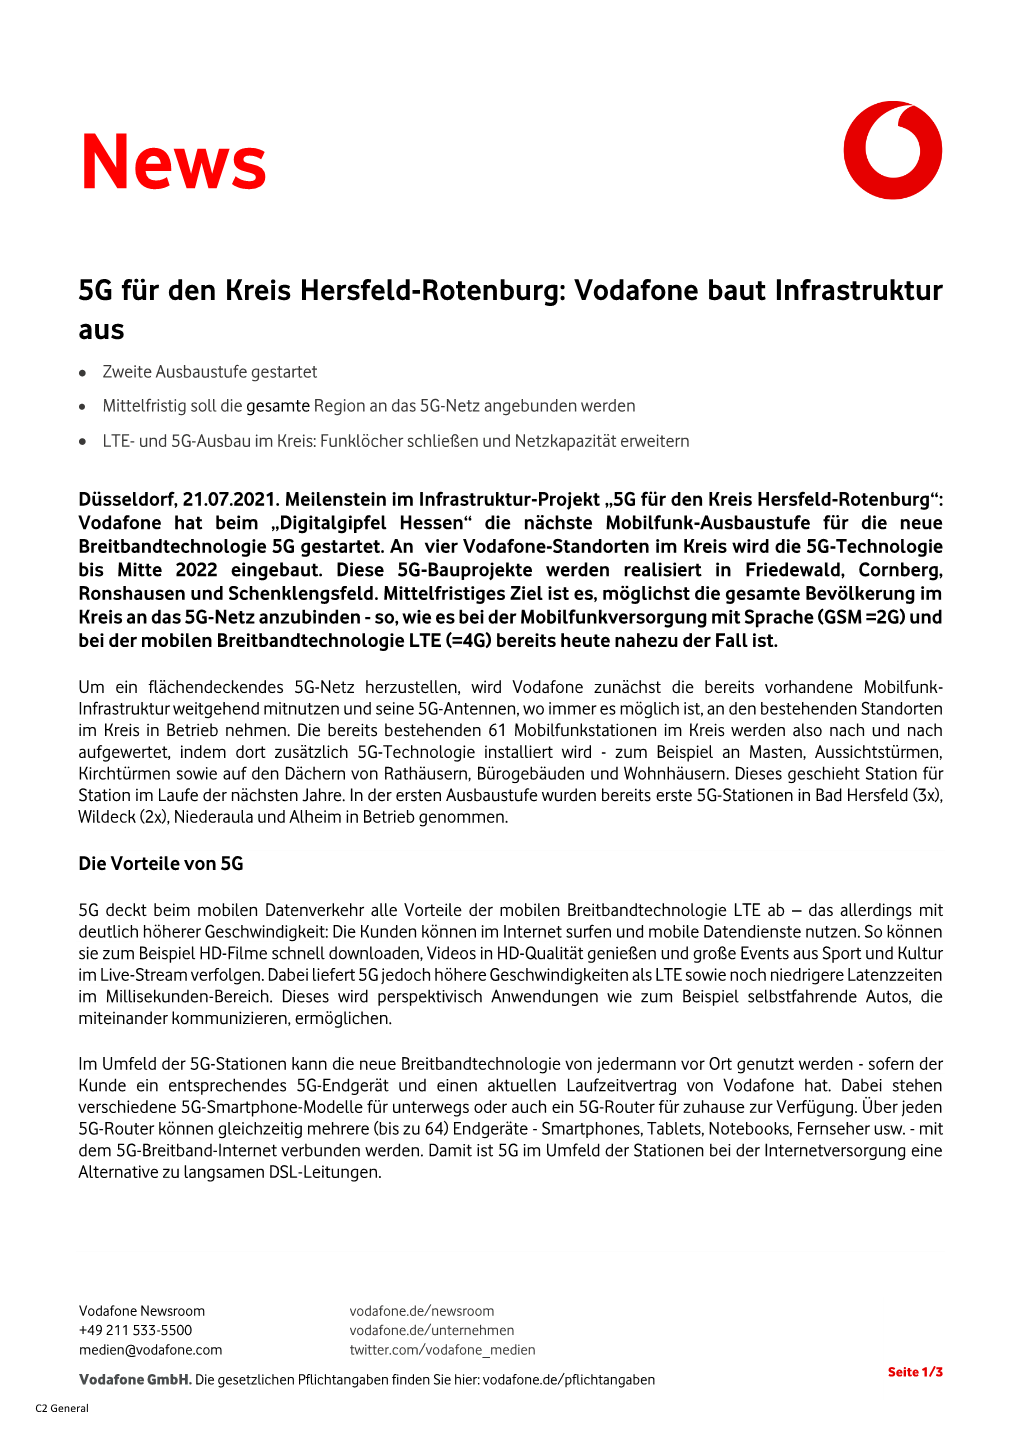 5G Für Den Kreis Hersfeld-Rotenburg